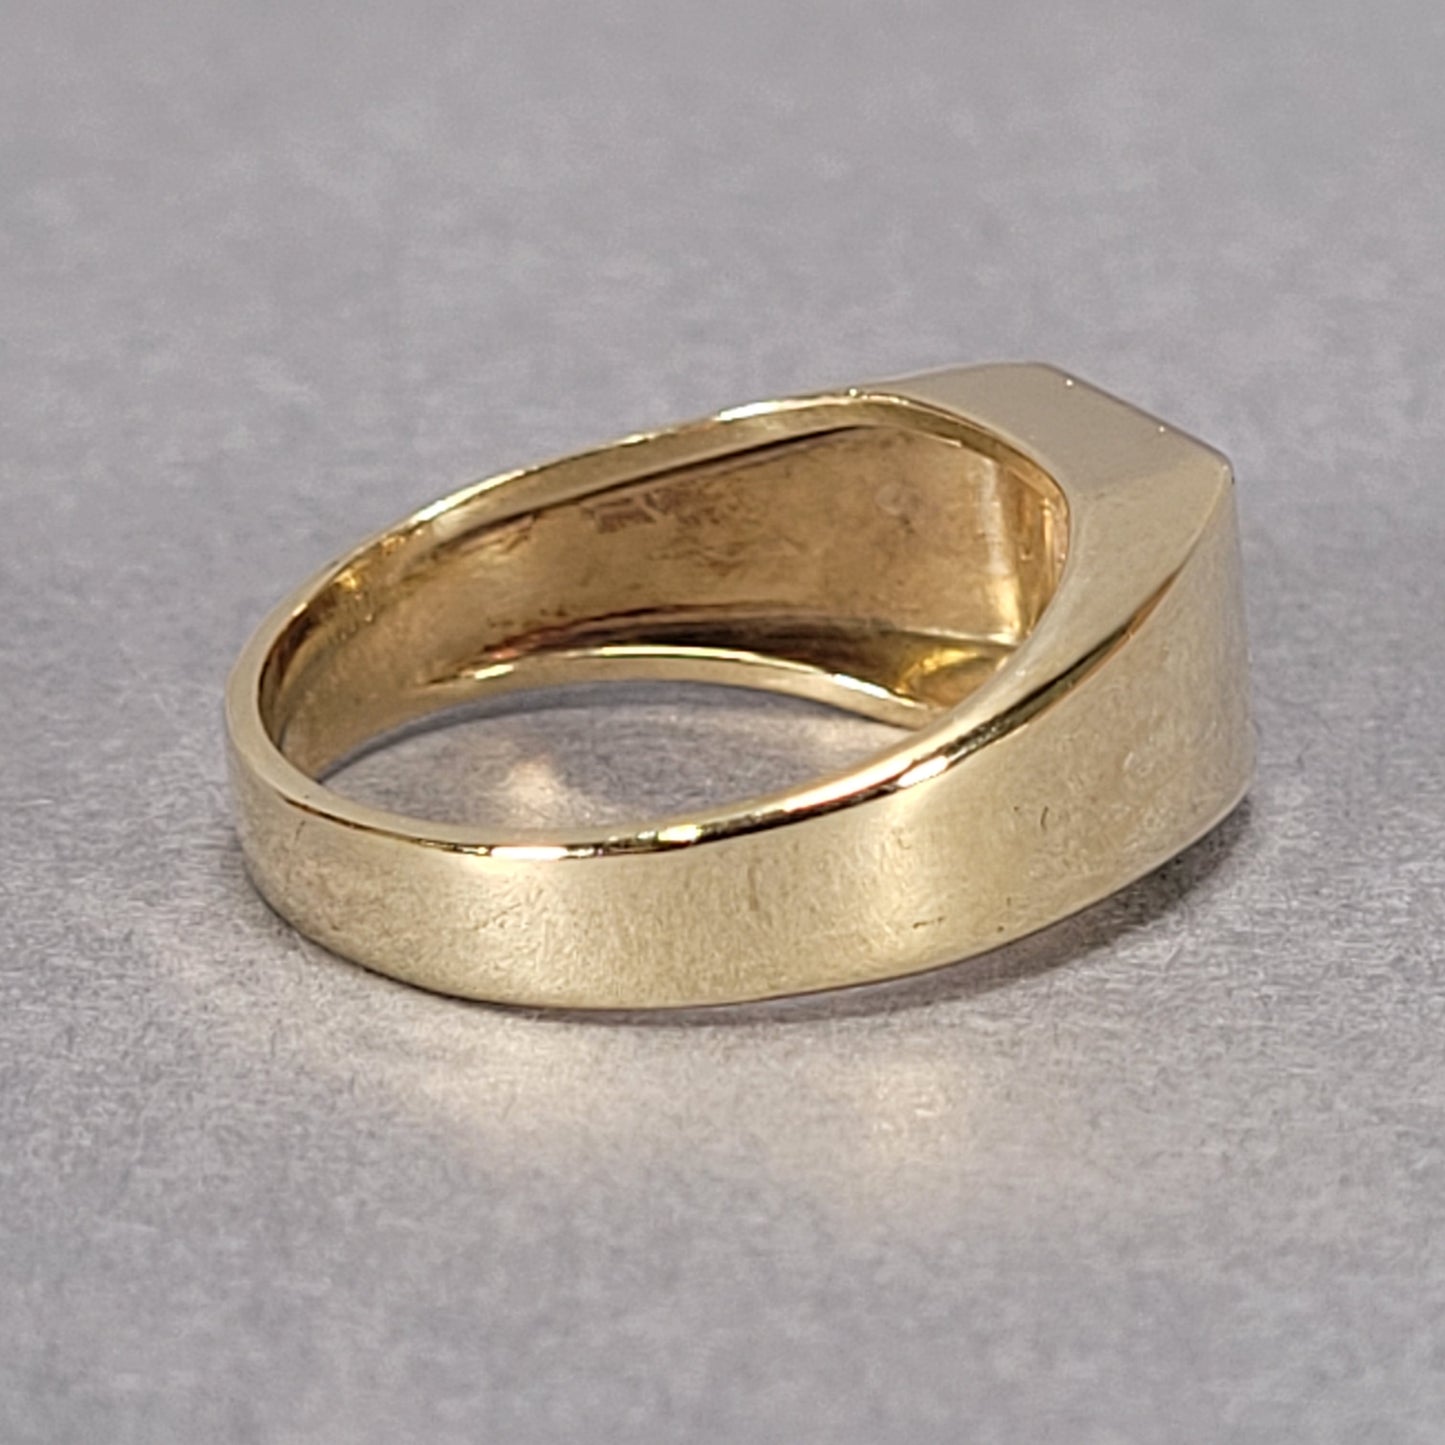 Men's 14k Gold Ring With 1 Diamond 6.3g